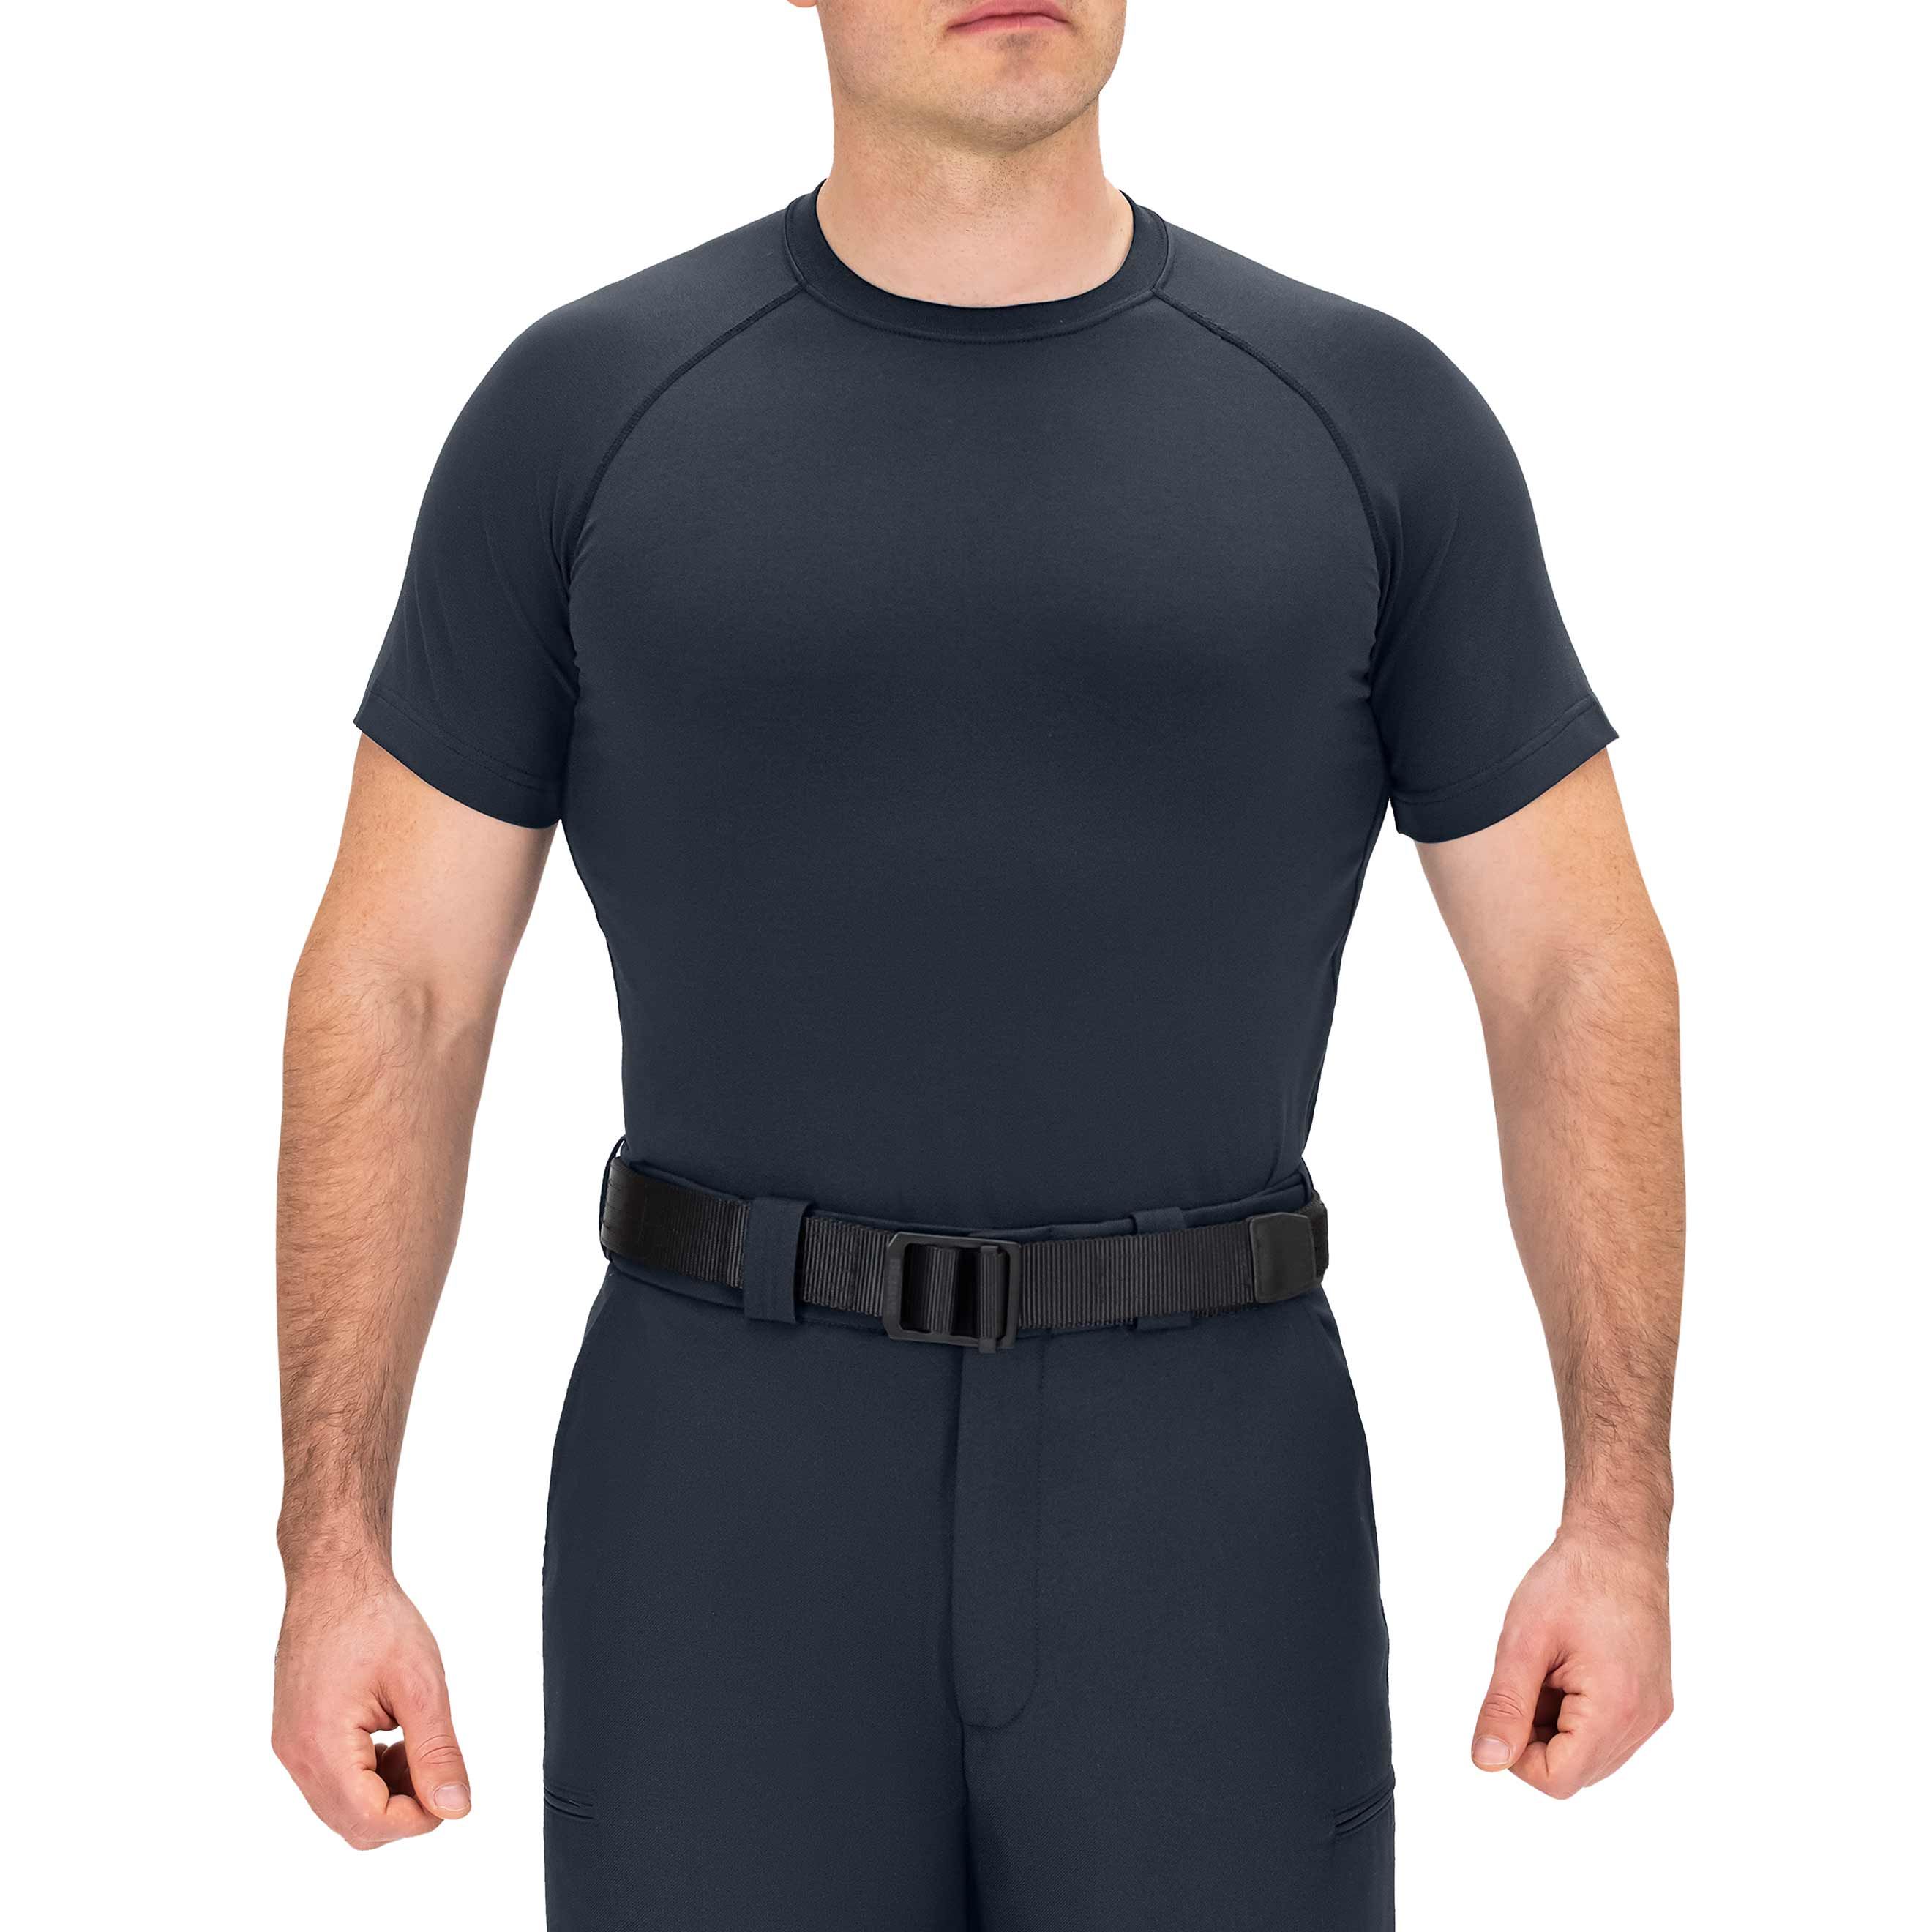 Blauer - 8120 - Compression Shirt - Men's Workout Shirt